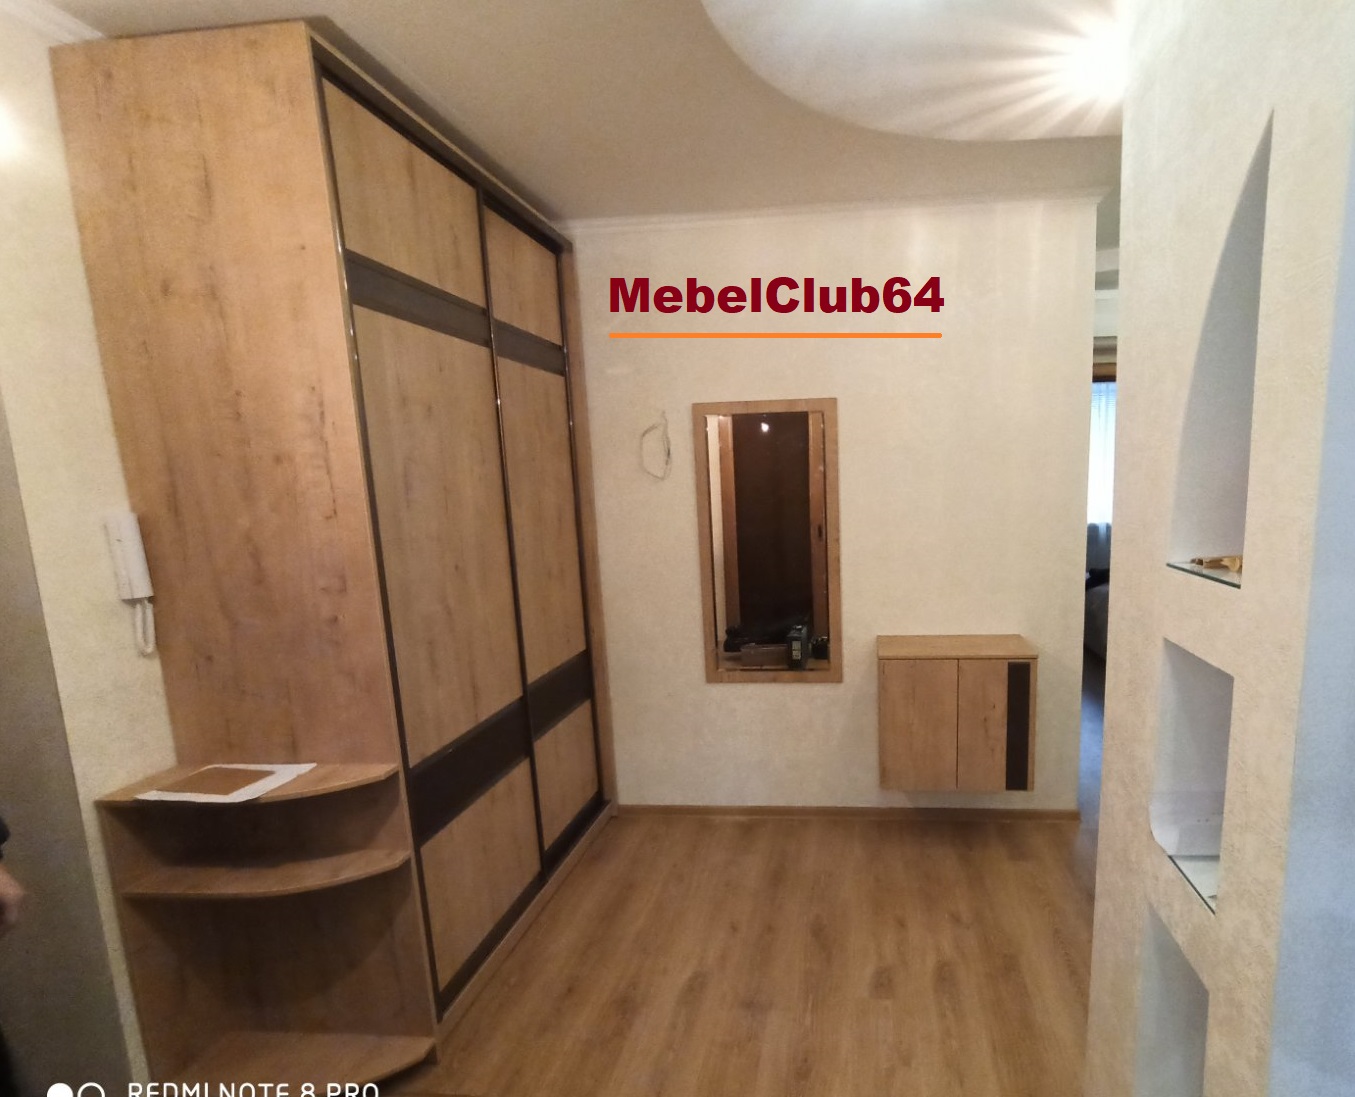 картинка Встроенный шкаф-купе + 2 тумбы + зеркало (Заказ № 177 от 16.11.19) от сети мебельных салонов MebelClub